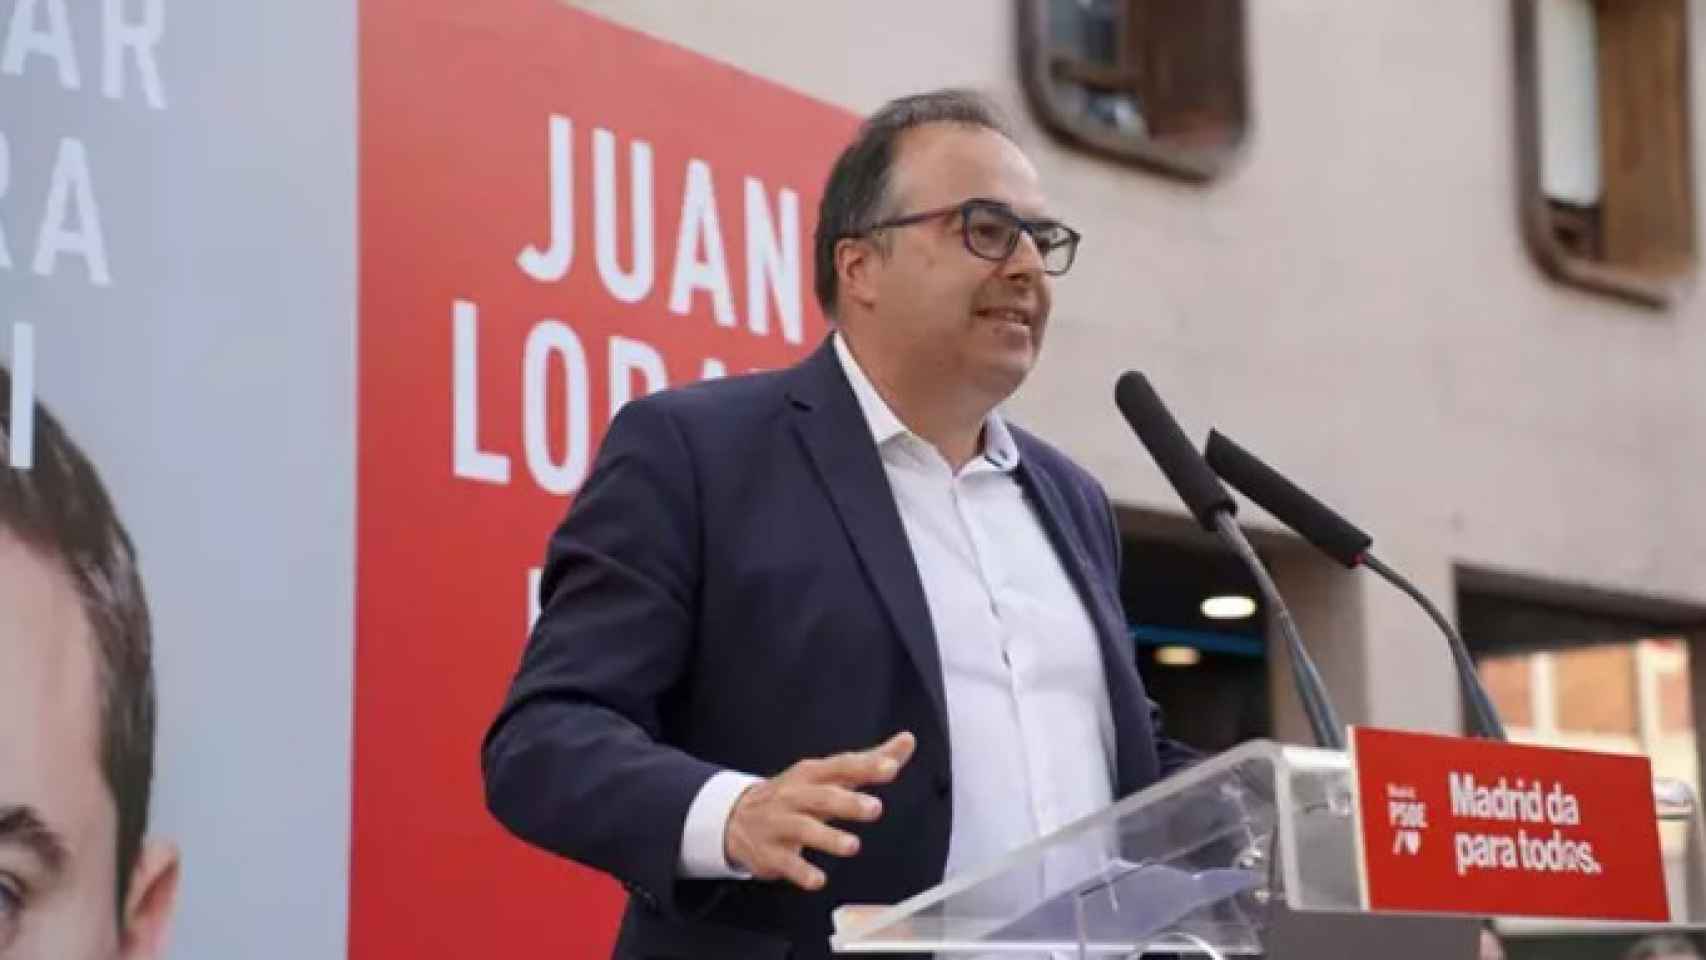 Santiago Llorente, alcalde en funciones de Leganés